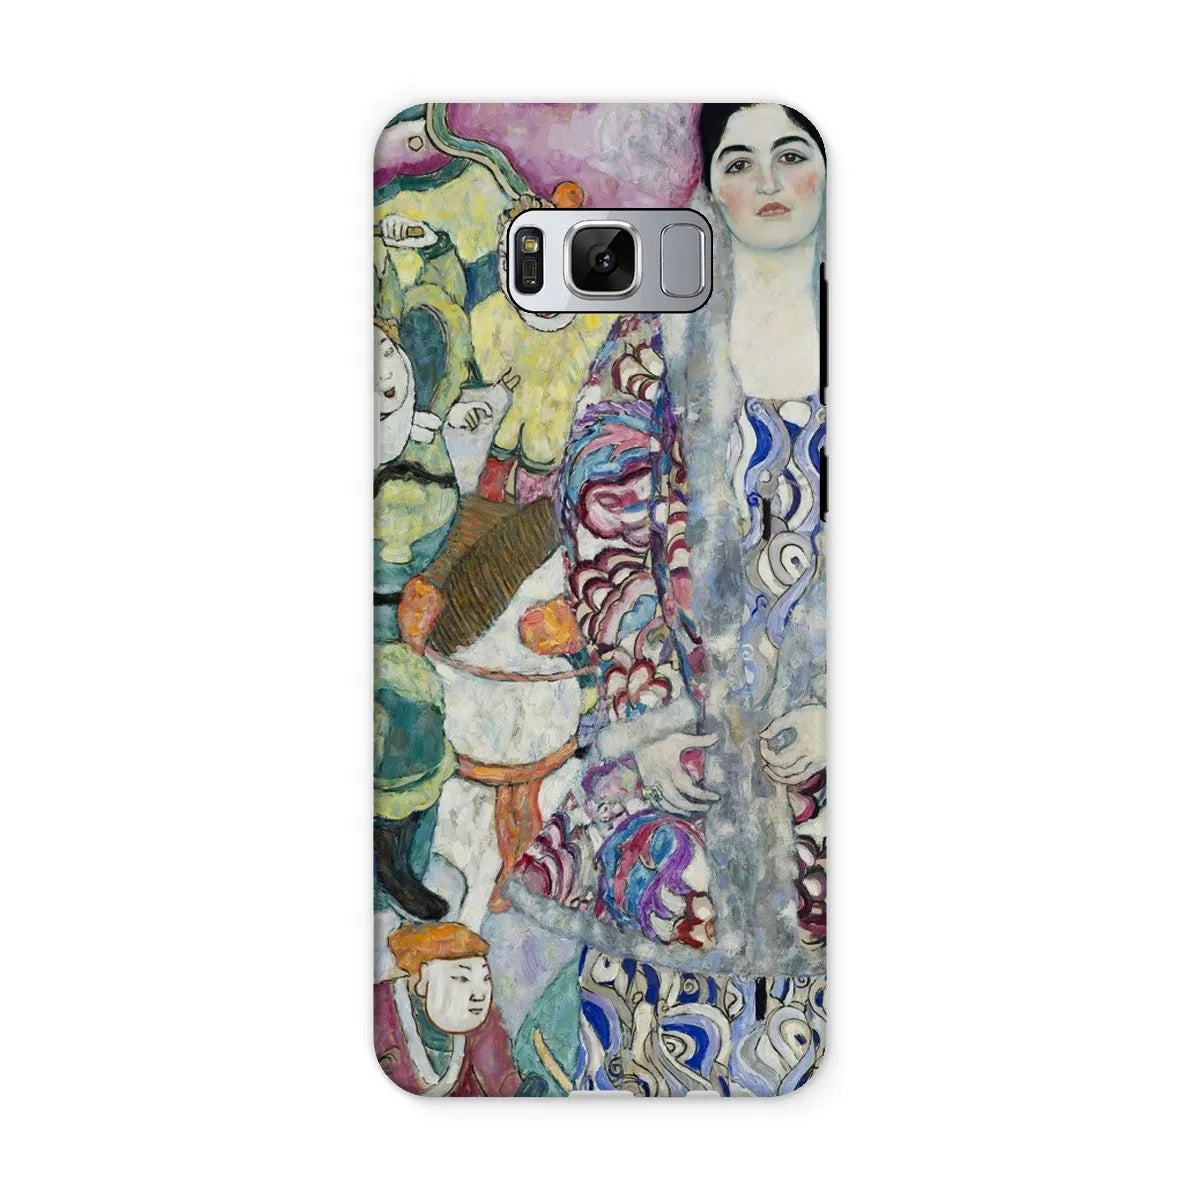 Friederike Maria Beer - Viennese Art Phone Case - Gustav Klimt - Samsung Galaxy S8 / Matte - Mobile Phone Cases